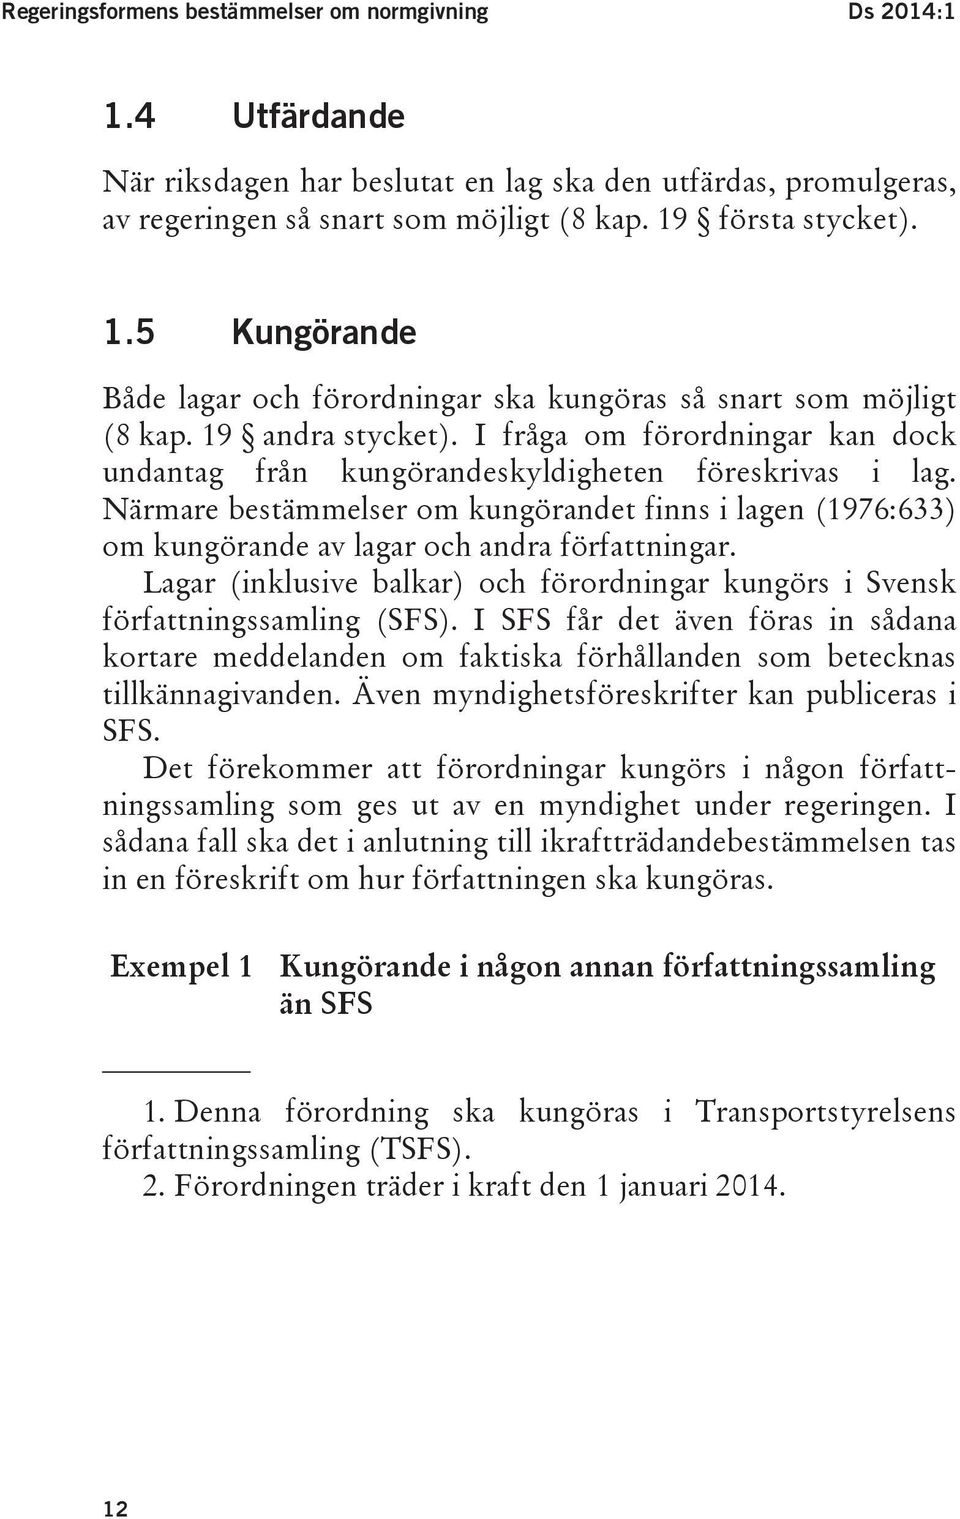 Närmare bestämmelser om kungörandet finns i lagen (1976:633) om kungörande av lagar och andra författningar. Lagar (inklusive balkar) och förordningar kungörs i Svensk författningssamling (SFS).